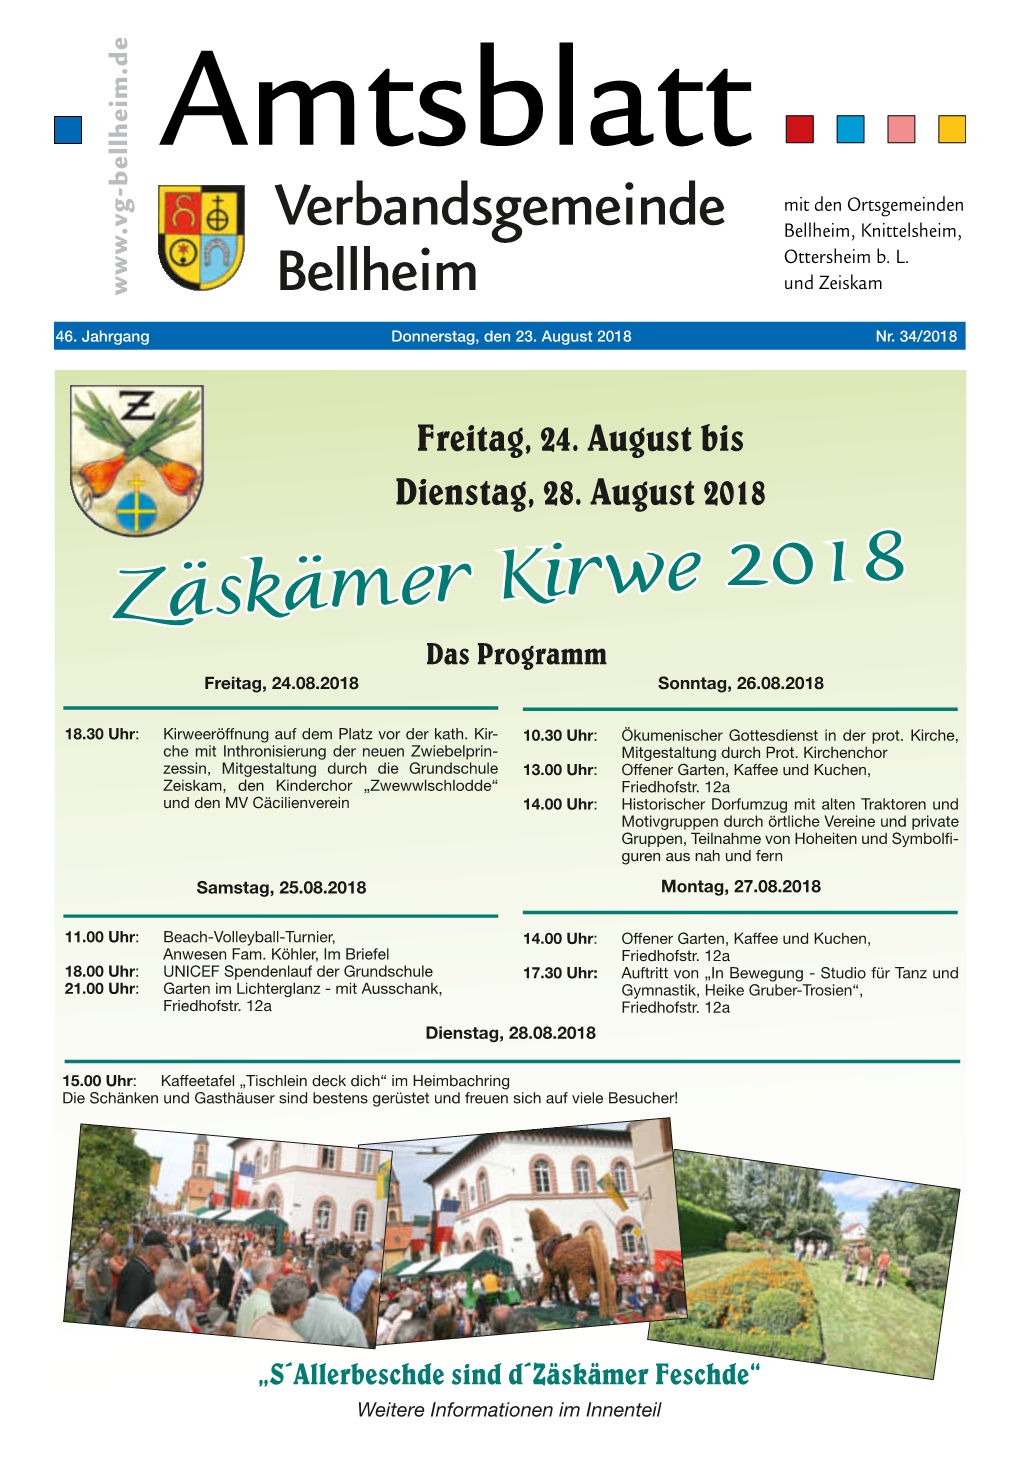 Zäskämer Kirwe 2018 Das Programm Freitag, 24.08.2018 Sonntag, 26.08.2018